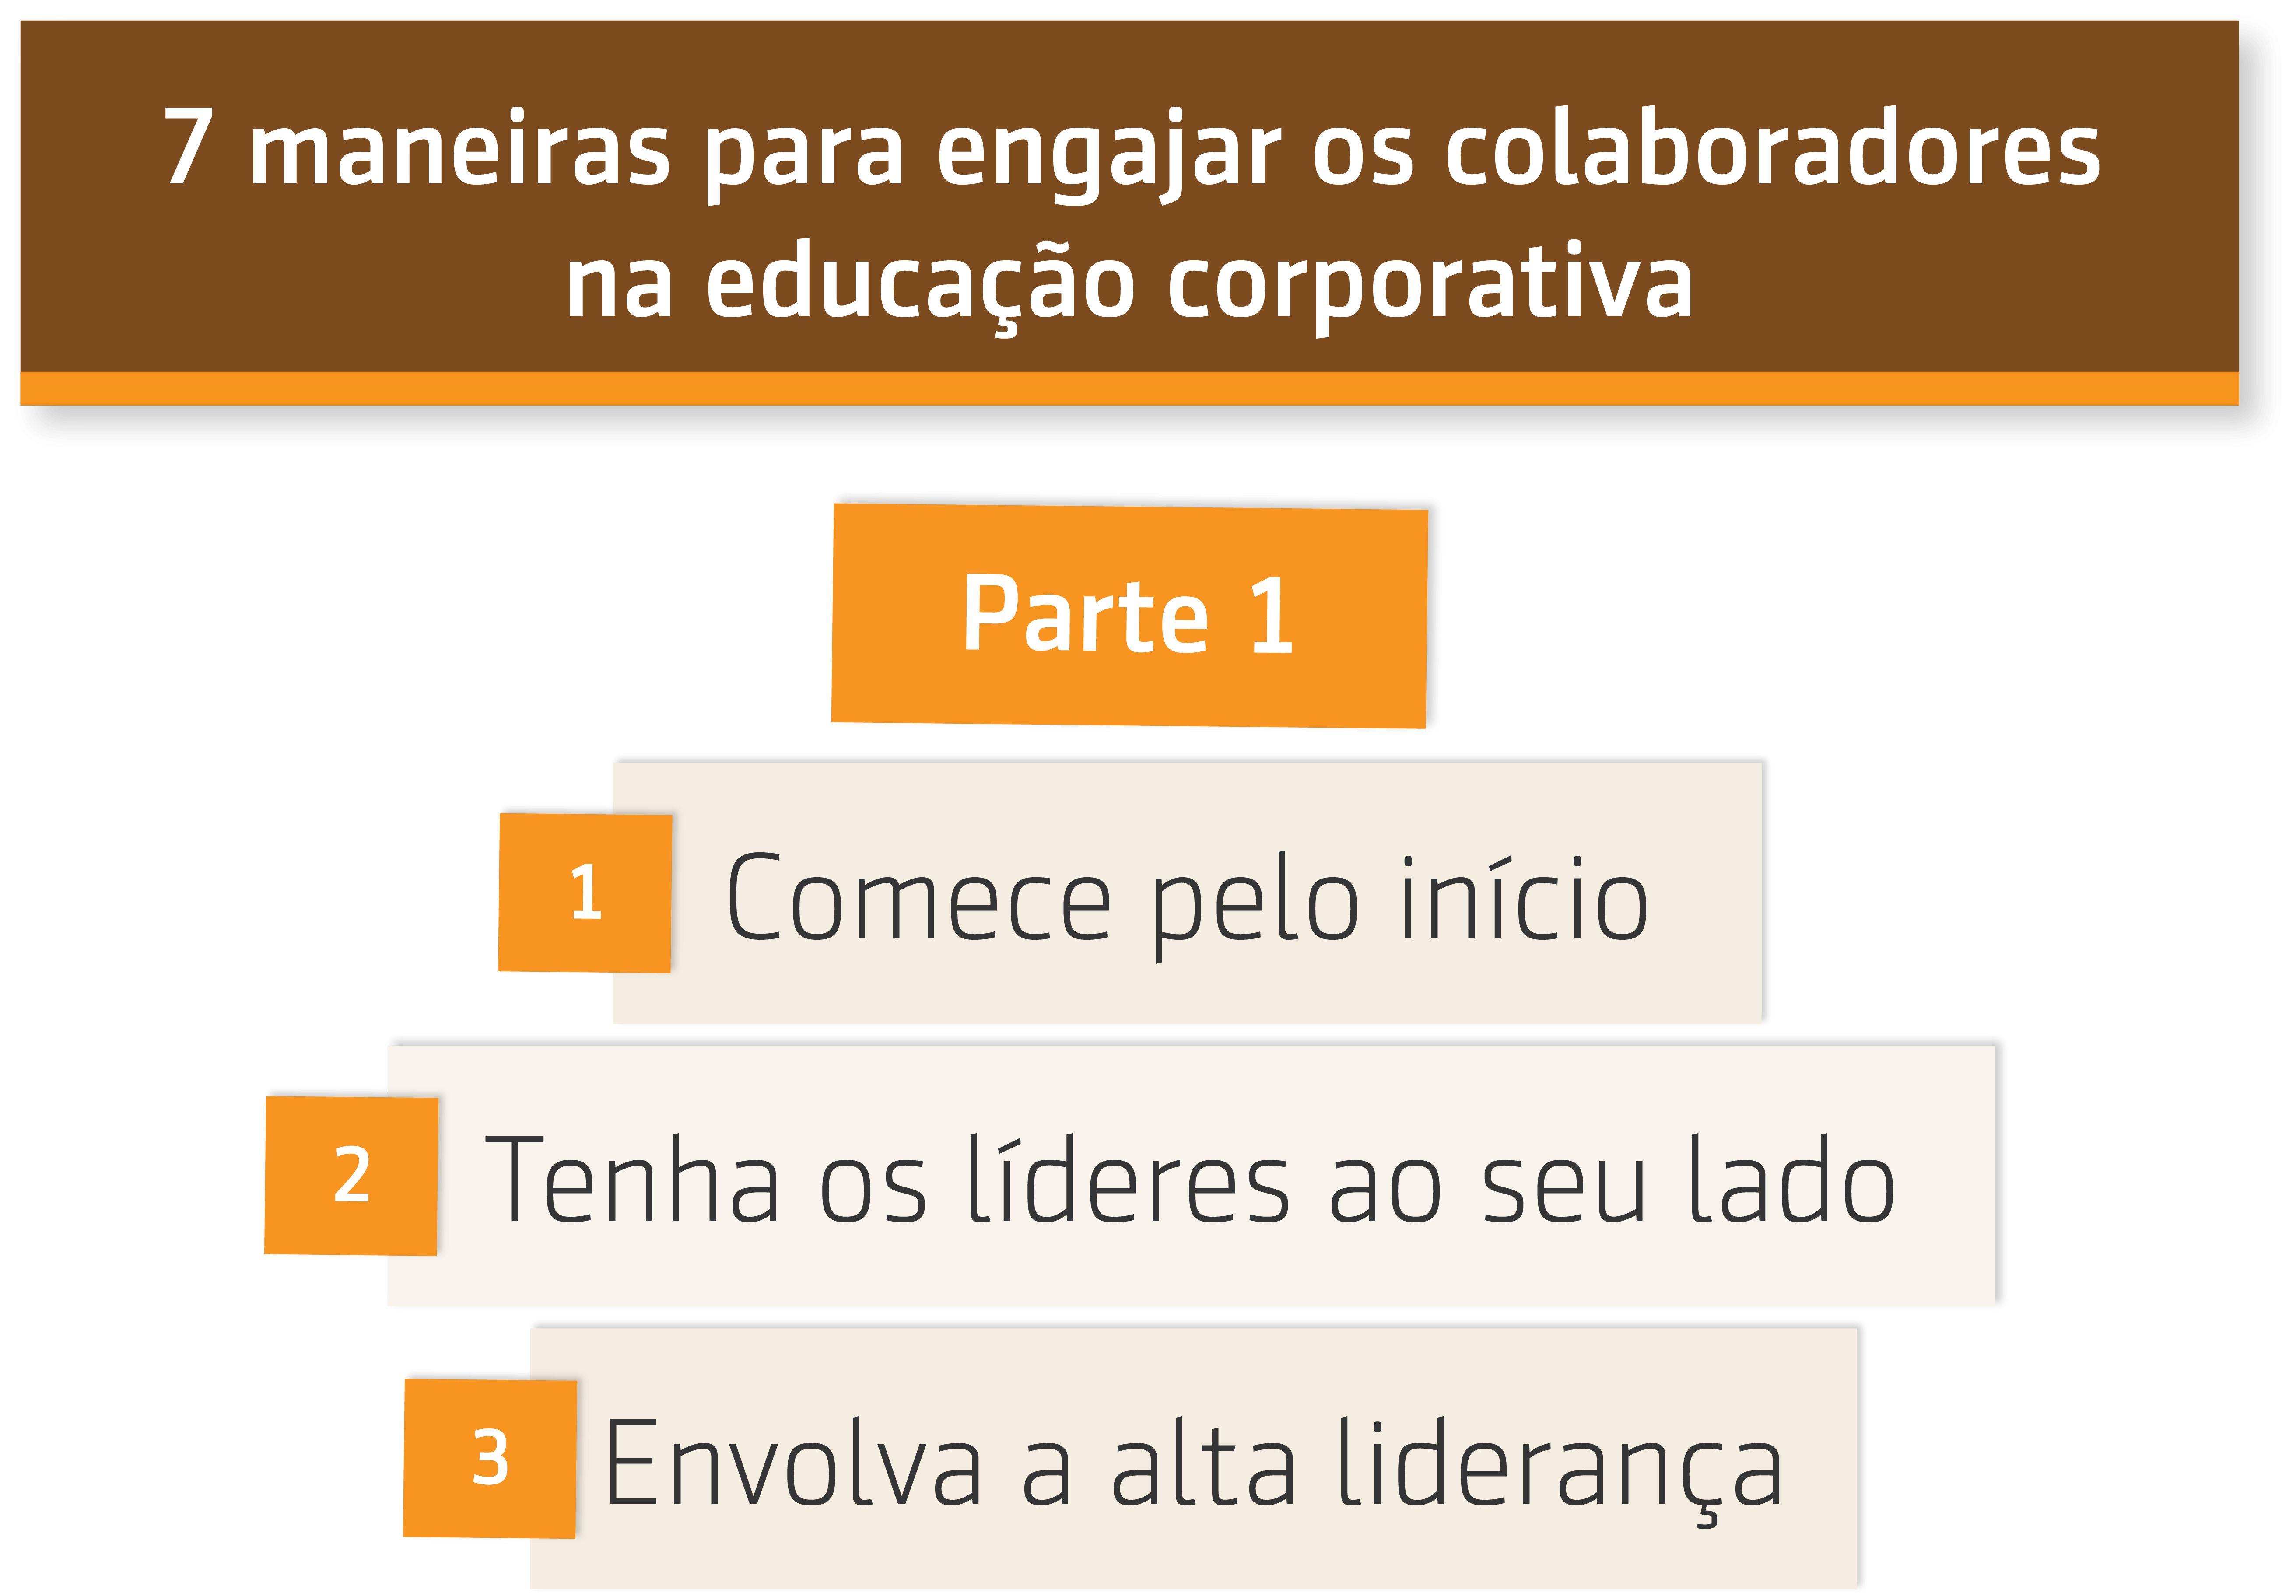 Resumo da aula 7 maneiras para engajar os colaboradores na educação corporativa: parte 1